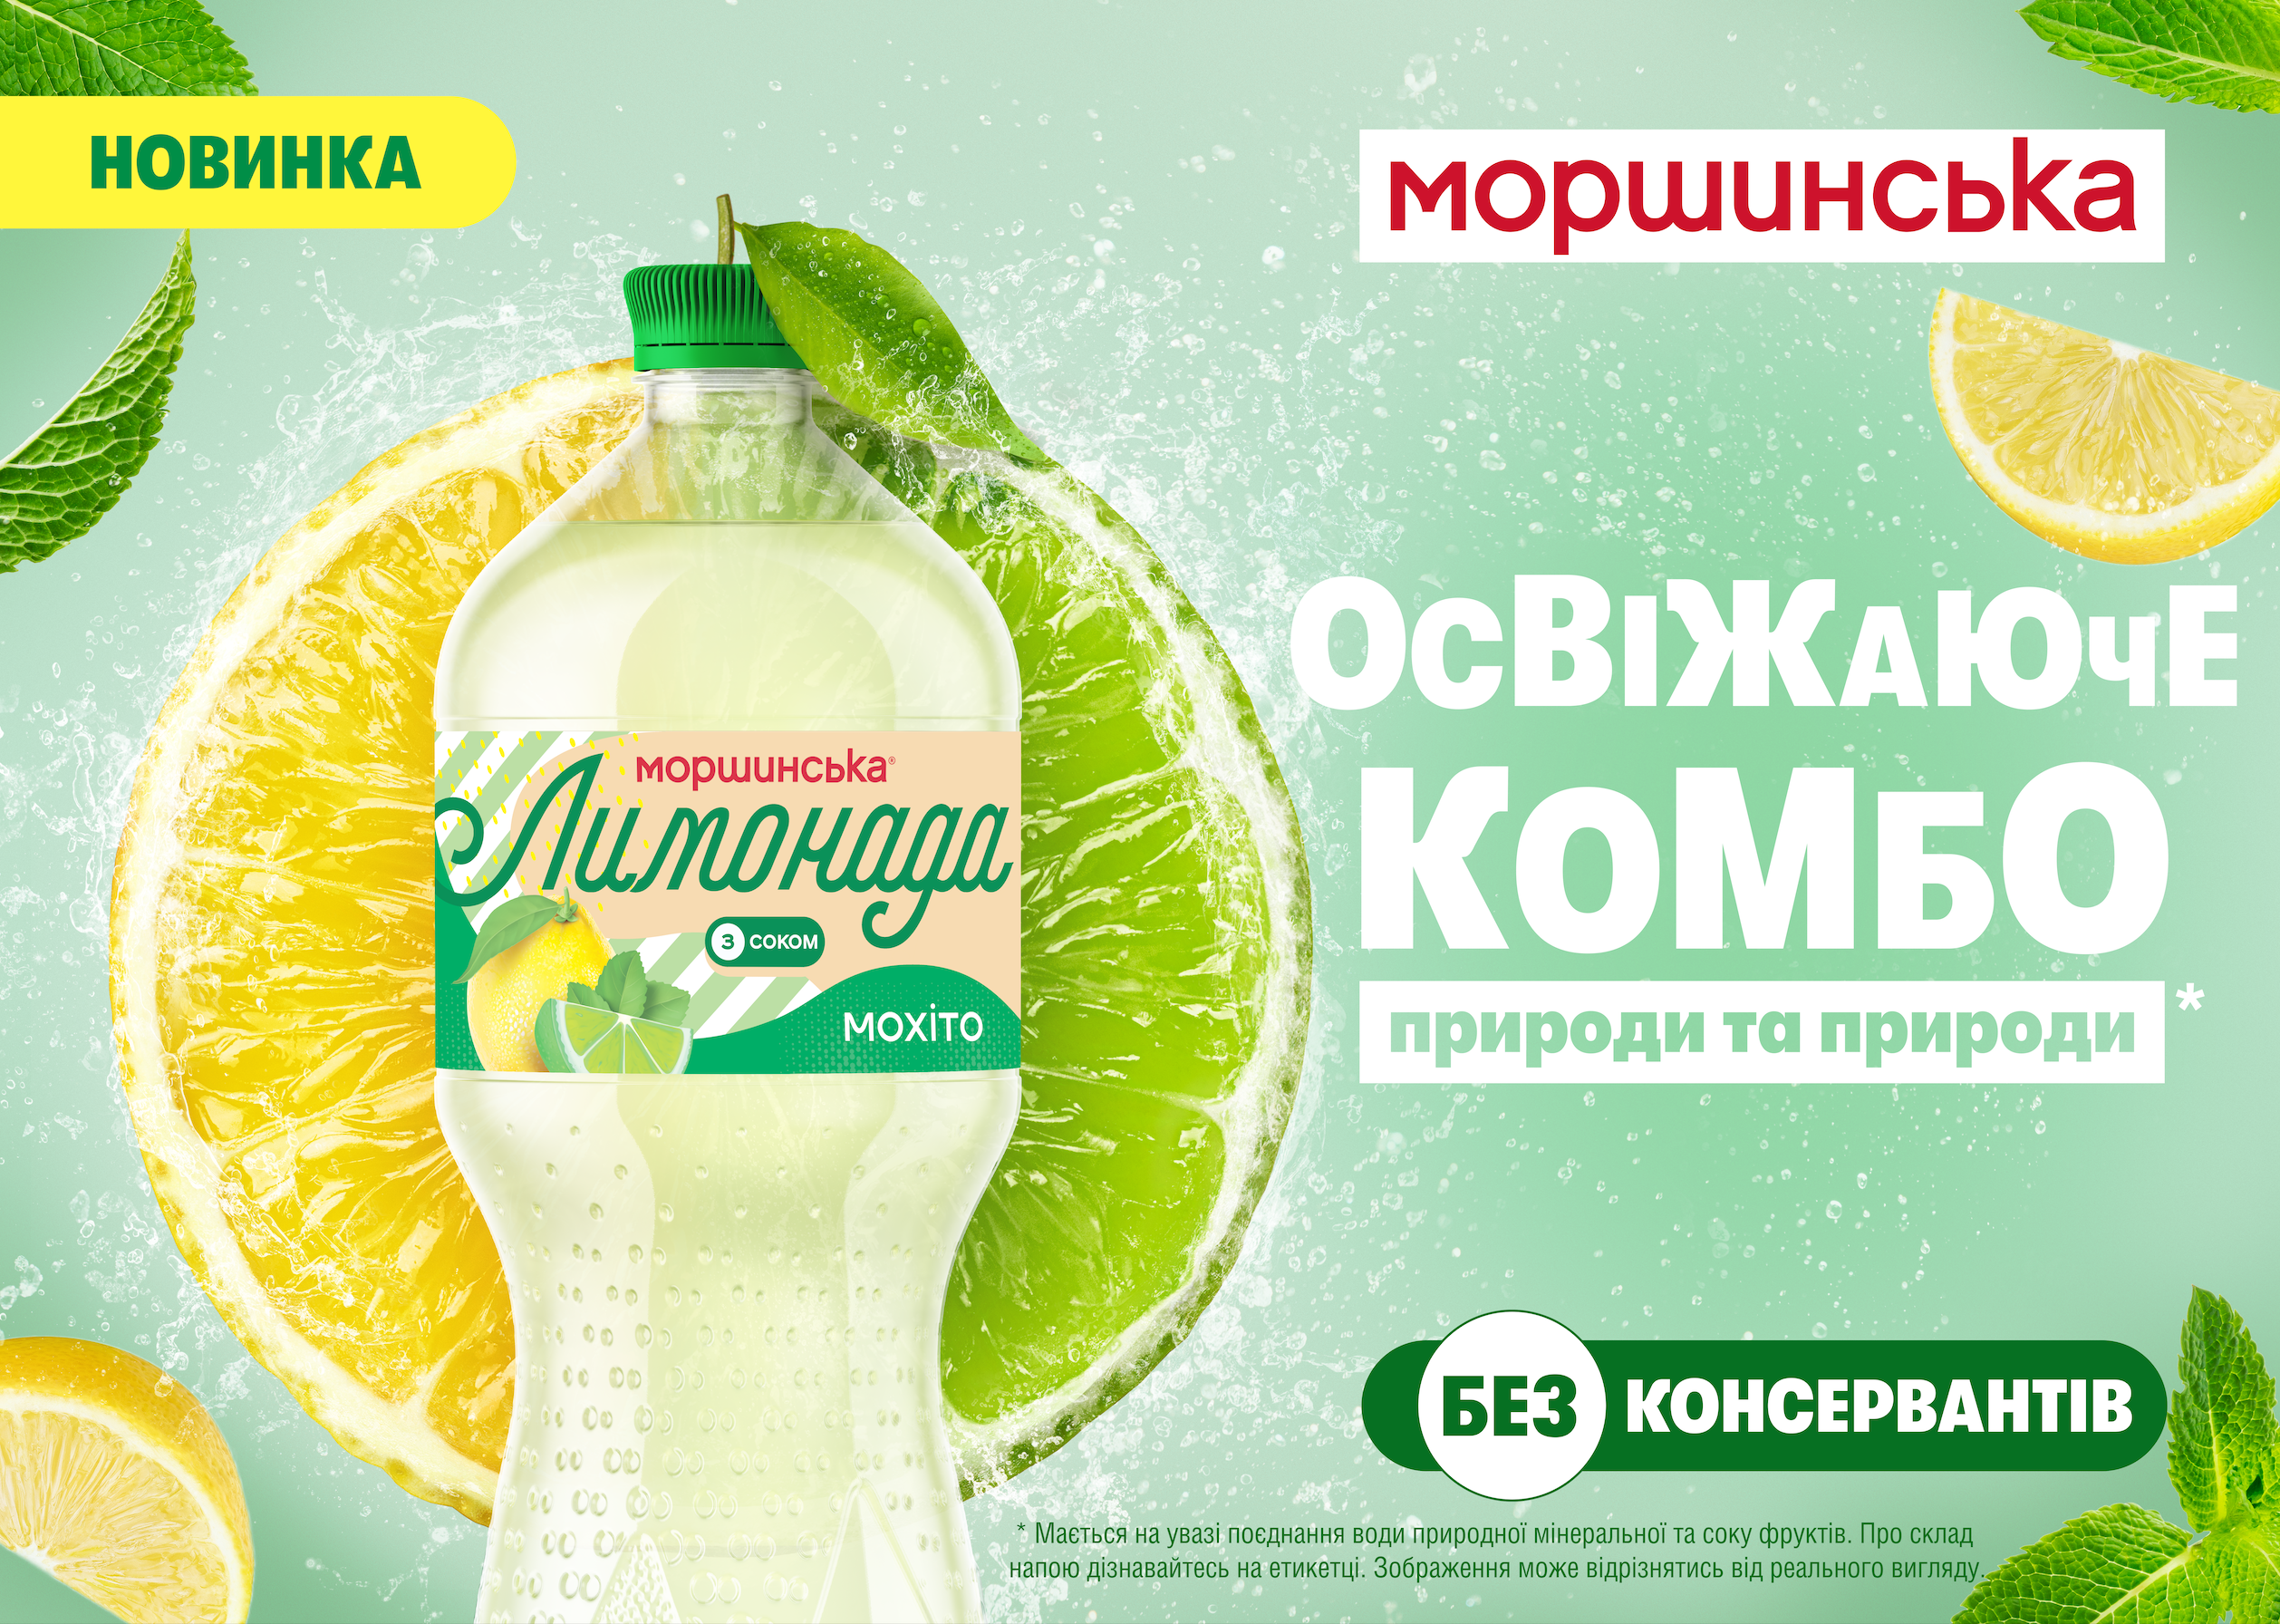 Моршинська представляє новинку — Лимонада Мохіто на основі природної мінеральної води та натуральних соків.